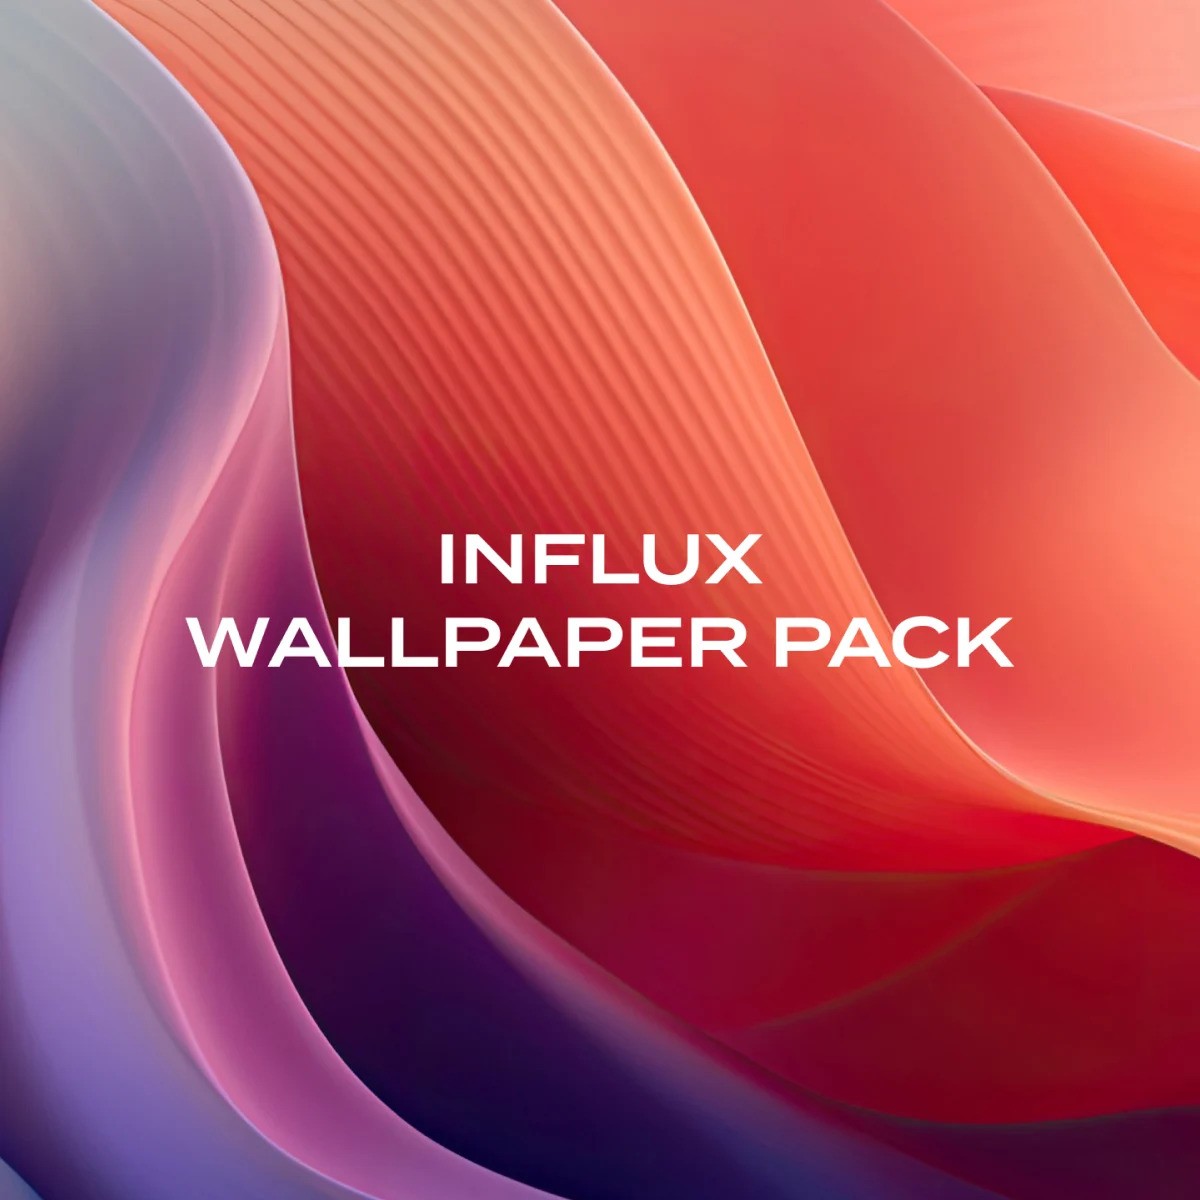 Oliur/Ultralinx Influx Wallpaper Pack